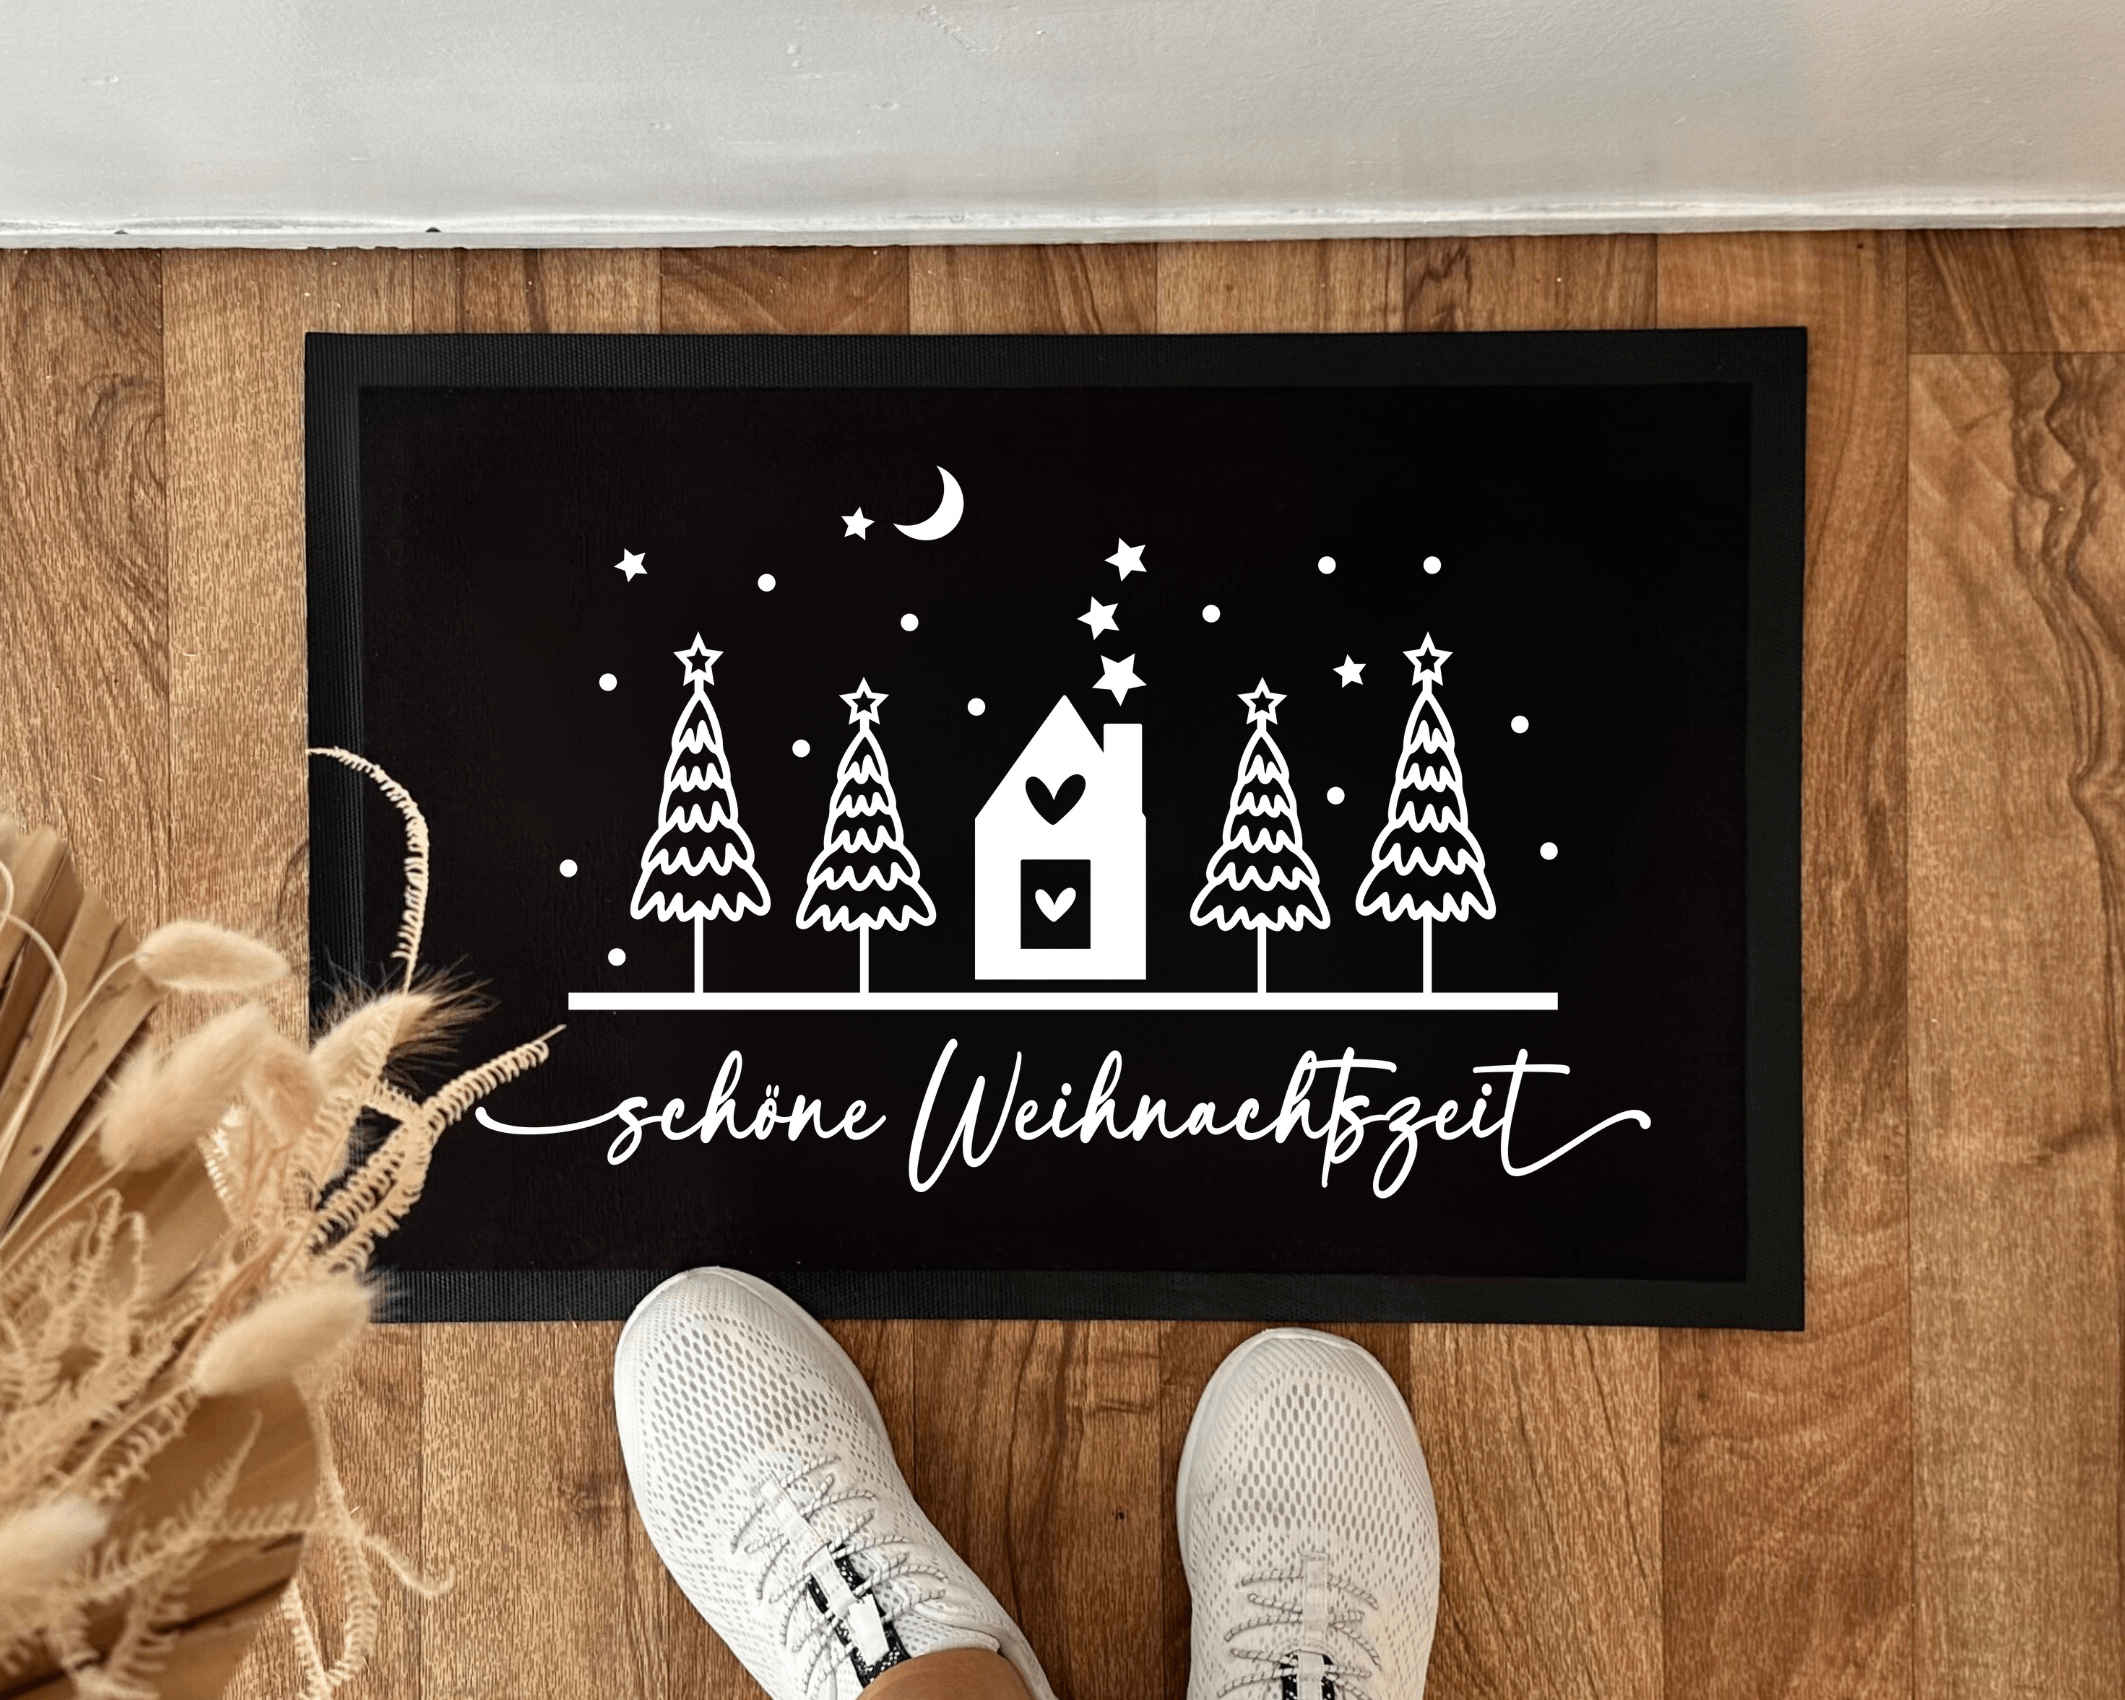 Fußmatte Weihnachten | Hereingeschneit | Personalisierbarer Fußabtreter - Roo's Gift Shop